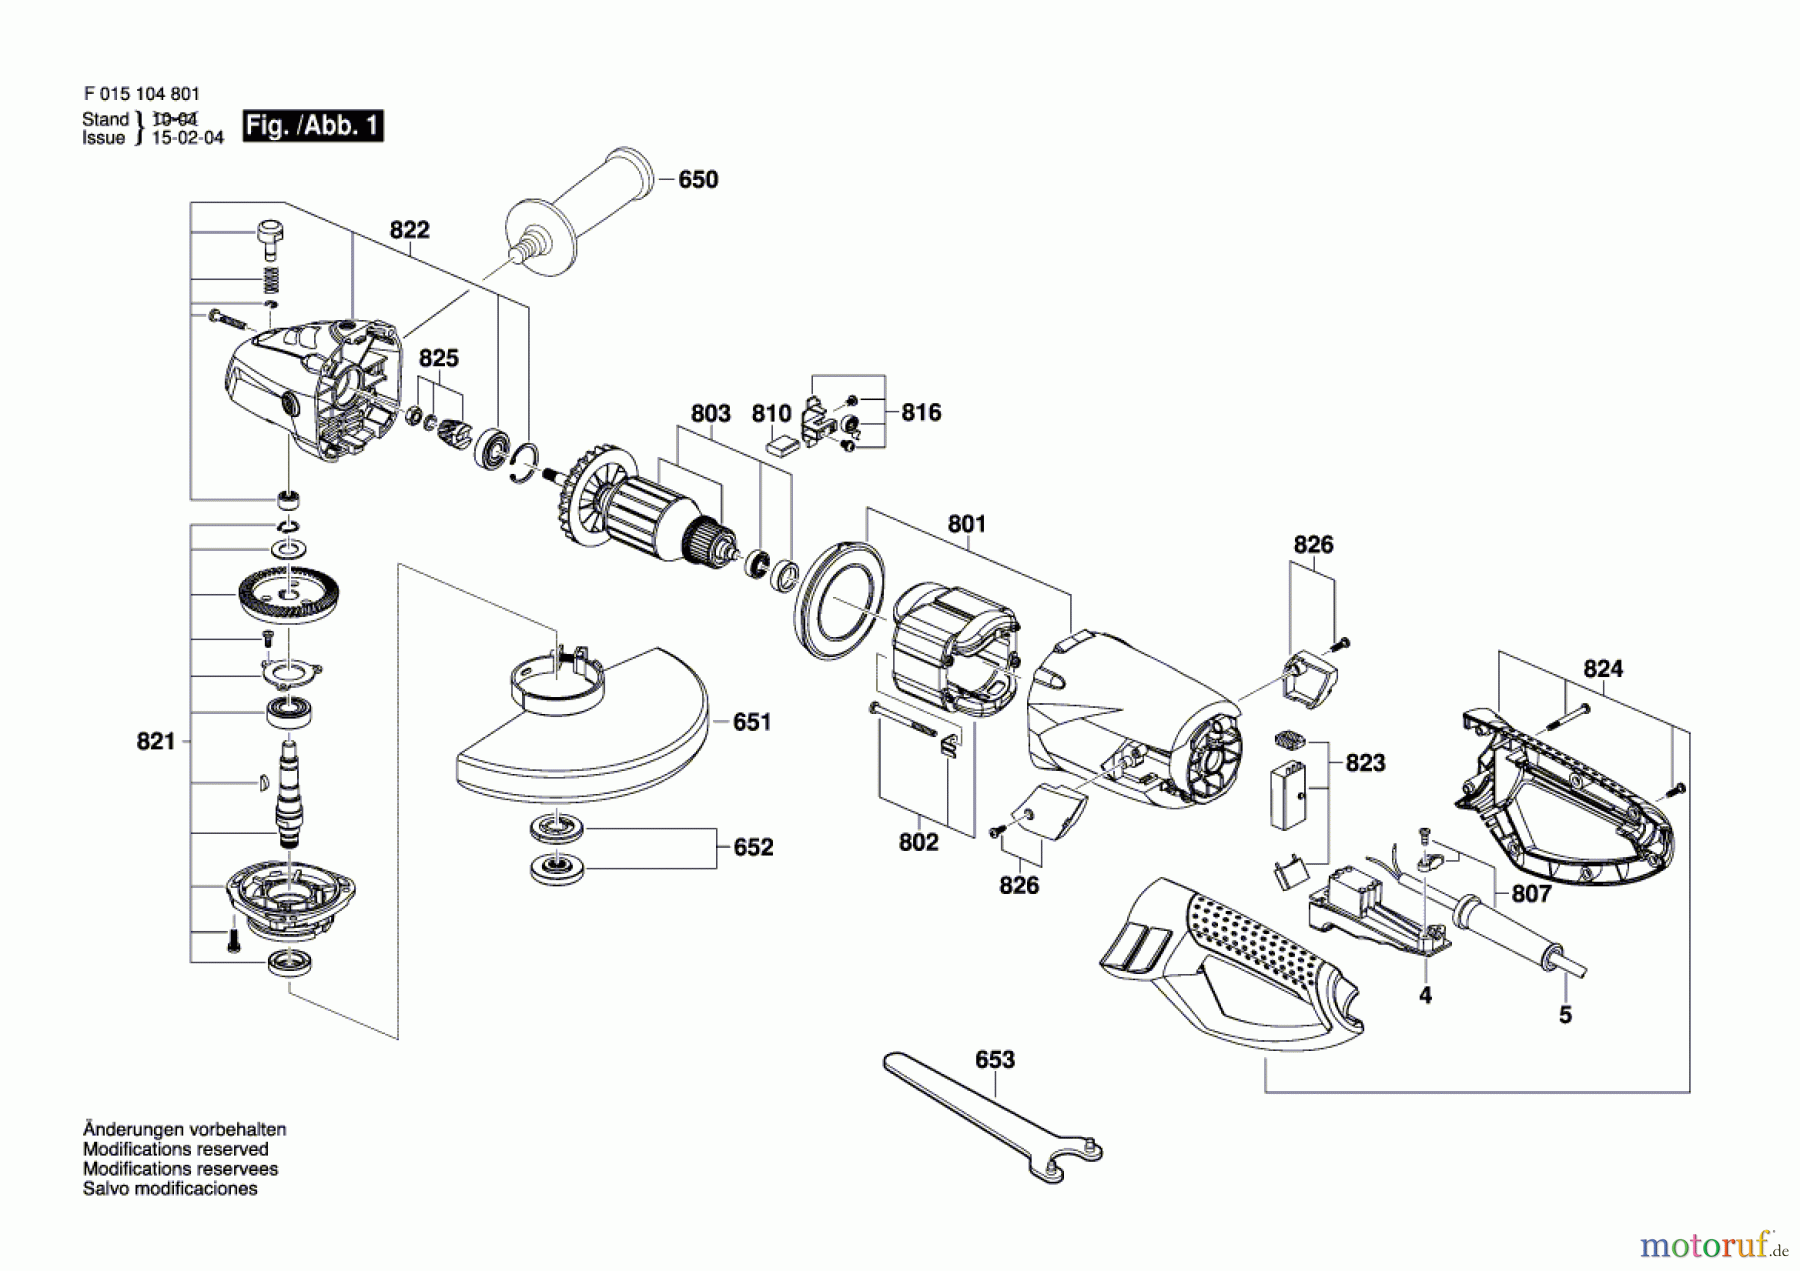  Bosch Werkzeug Winkelschleifer 1049 Seite 1